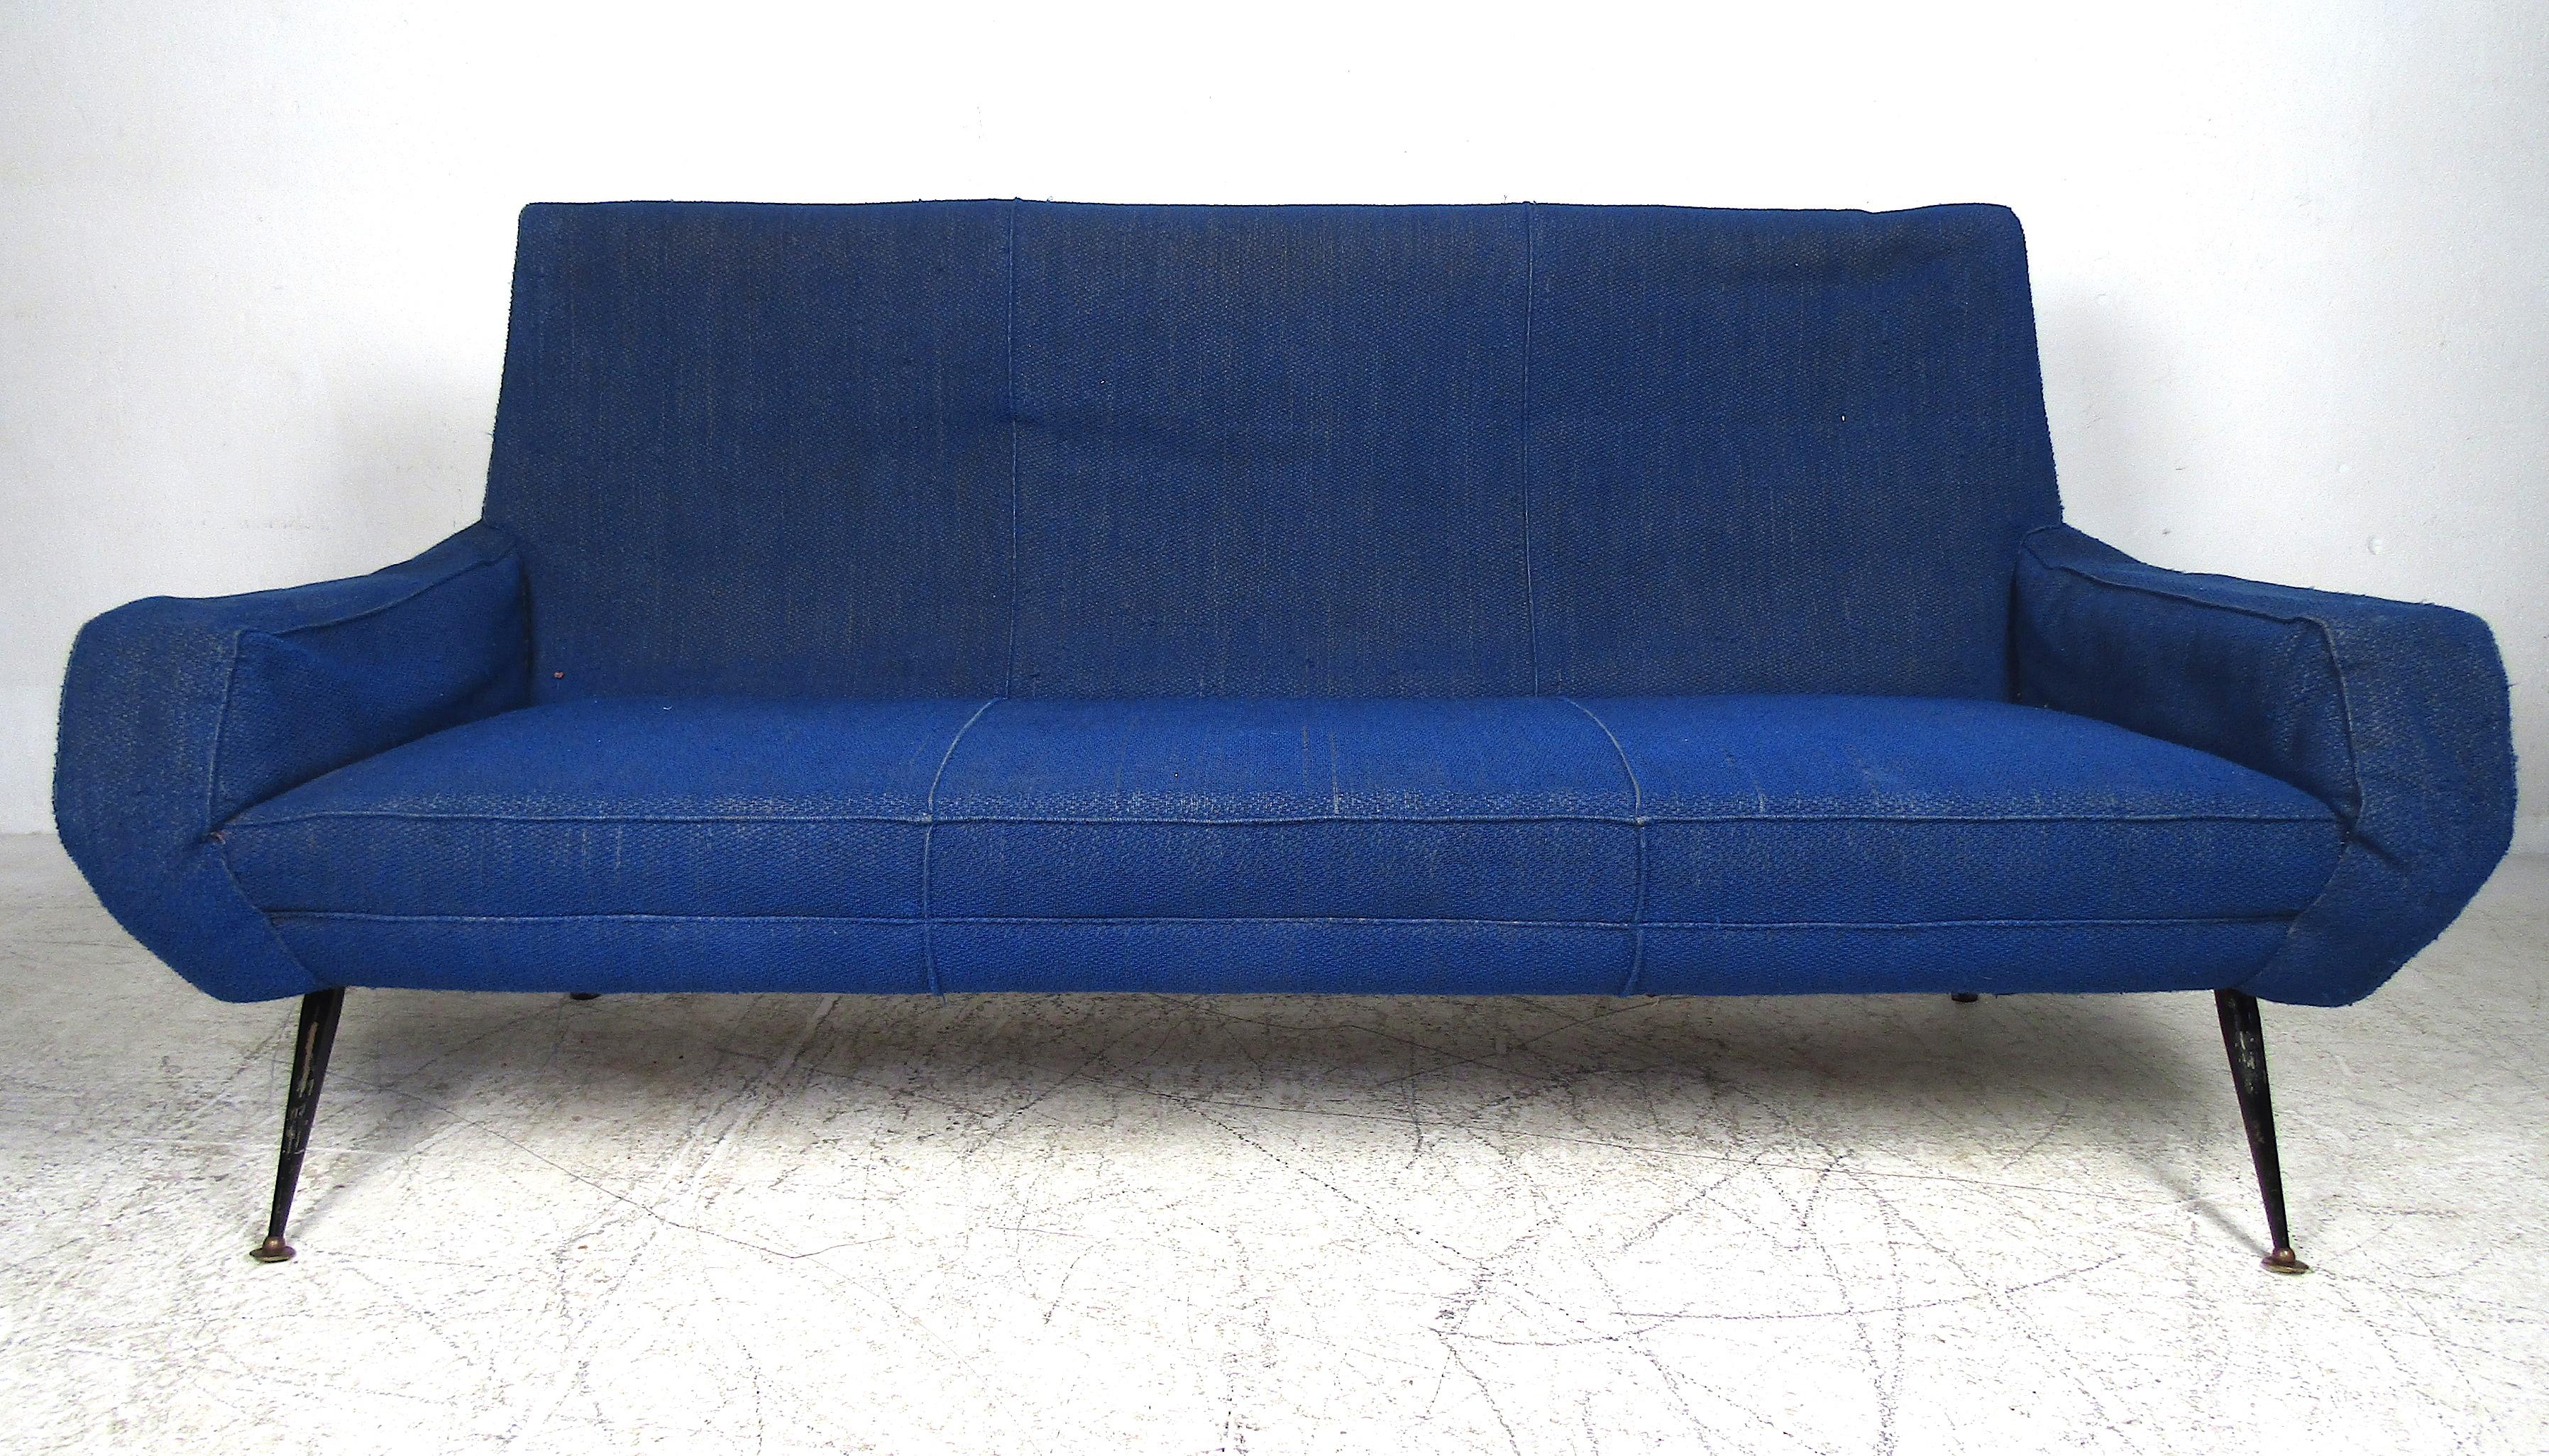 Ce magnifique canapé italien présente des accoudoirs sculptés ainsi que des pieds métalliques évasés. La sellerie bleu roi recouvre des sièges épais et rembourrés, garantissant un confort maximal. Cette pièce unique constitue un merveilleux